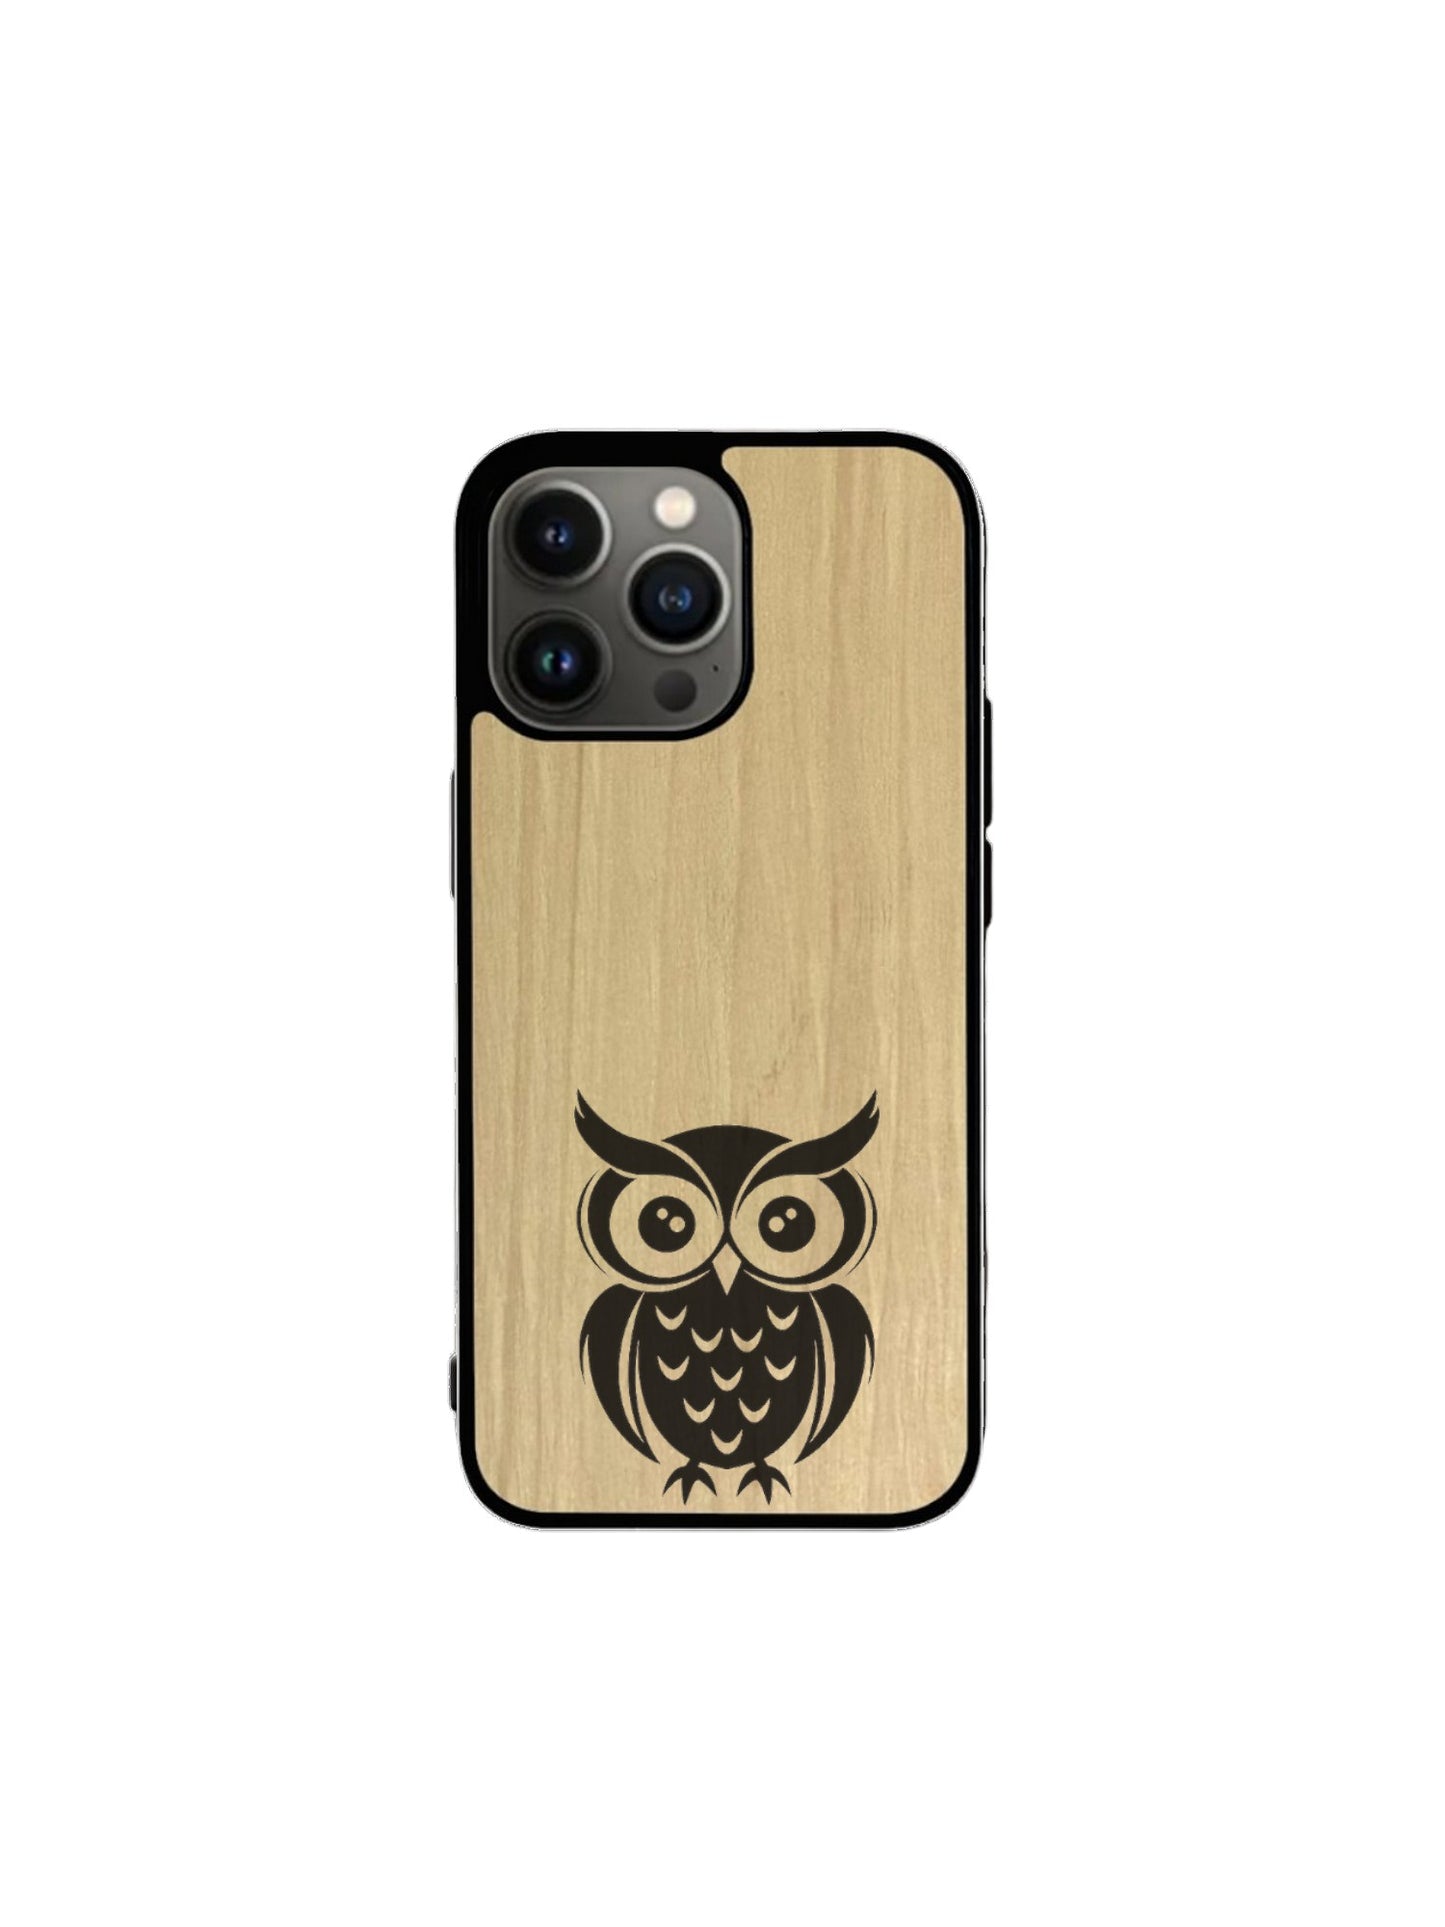 Iphone case - Owl